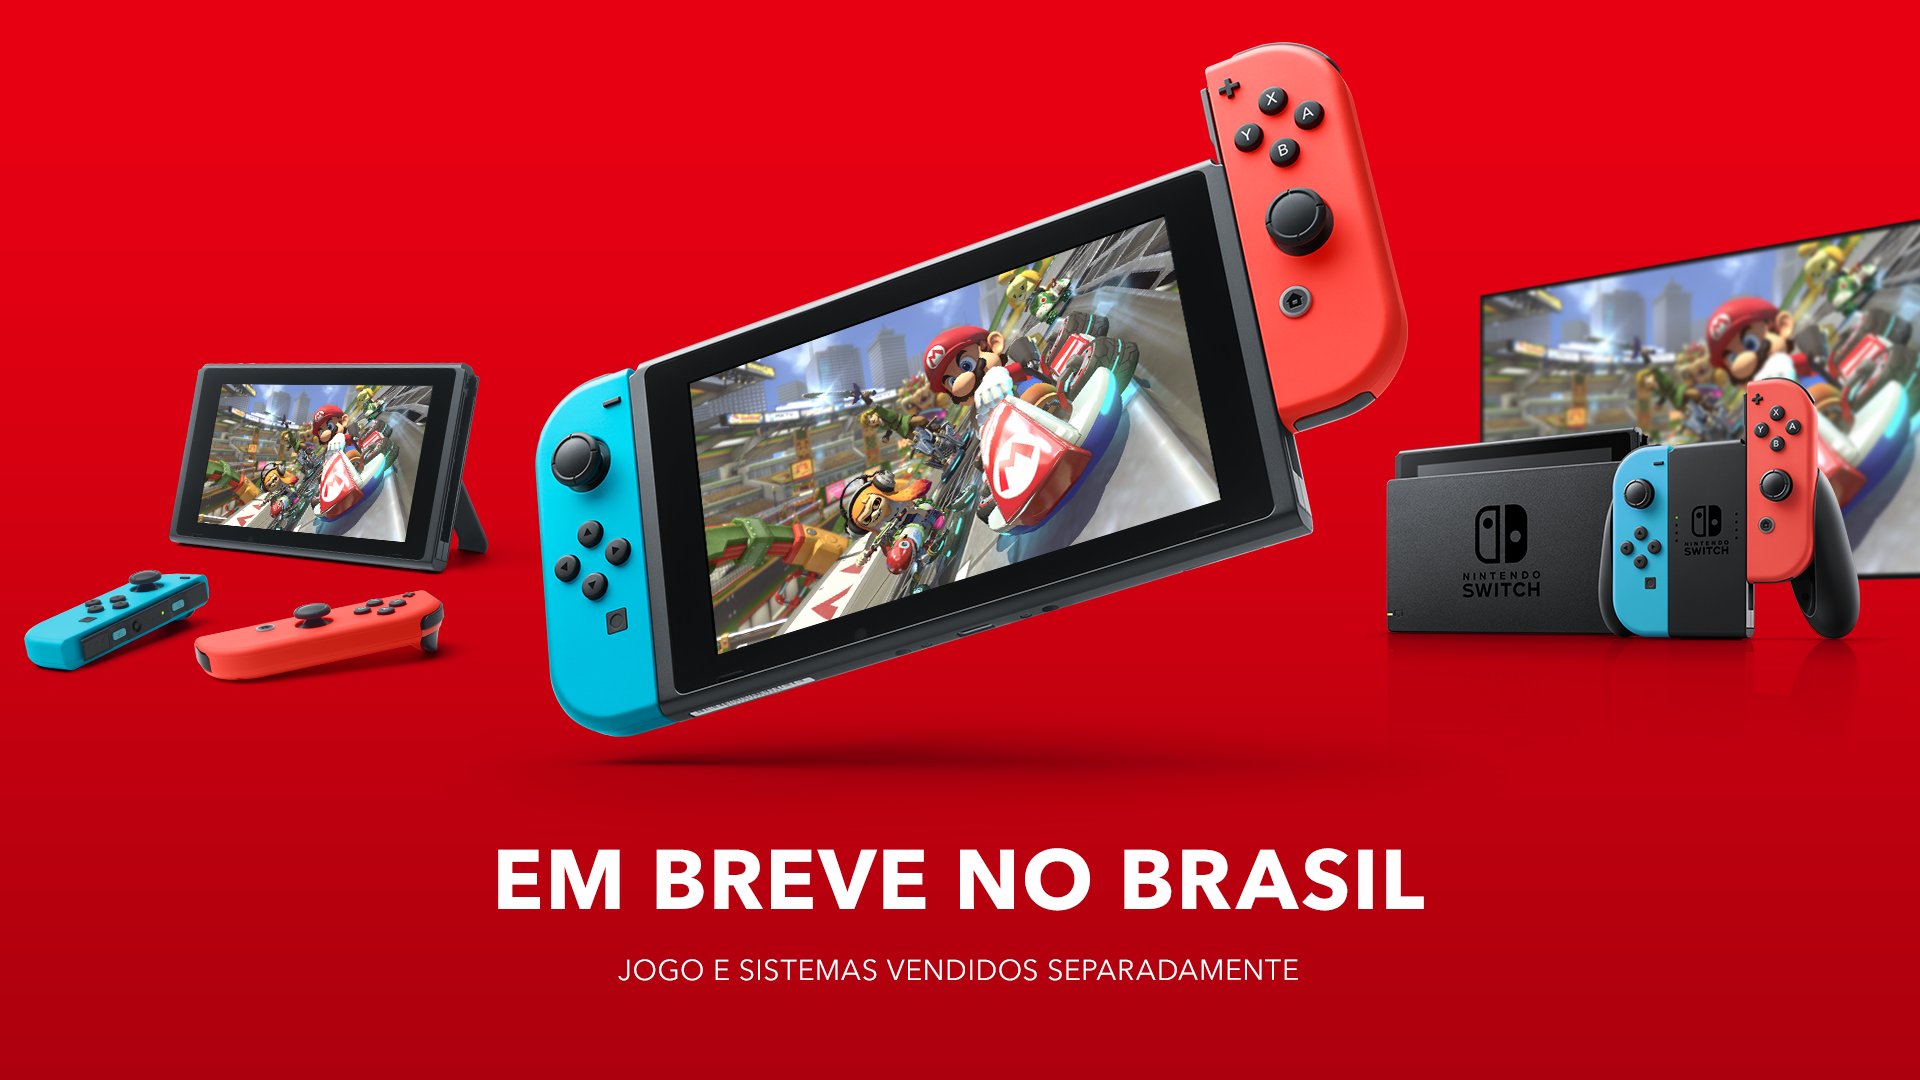 Nintendo retorna: Switch será vendido oficialmente no Brasil ainda em 2020